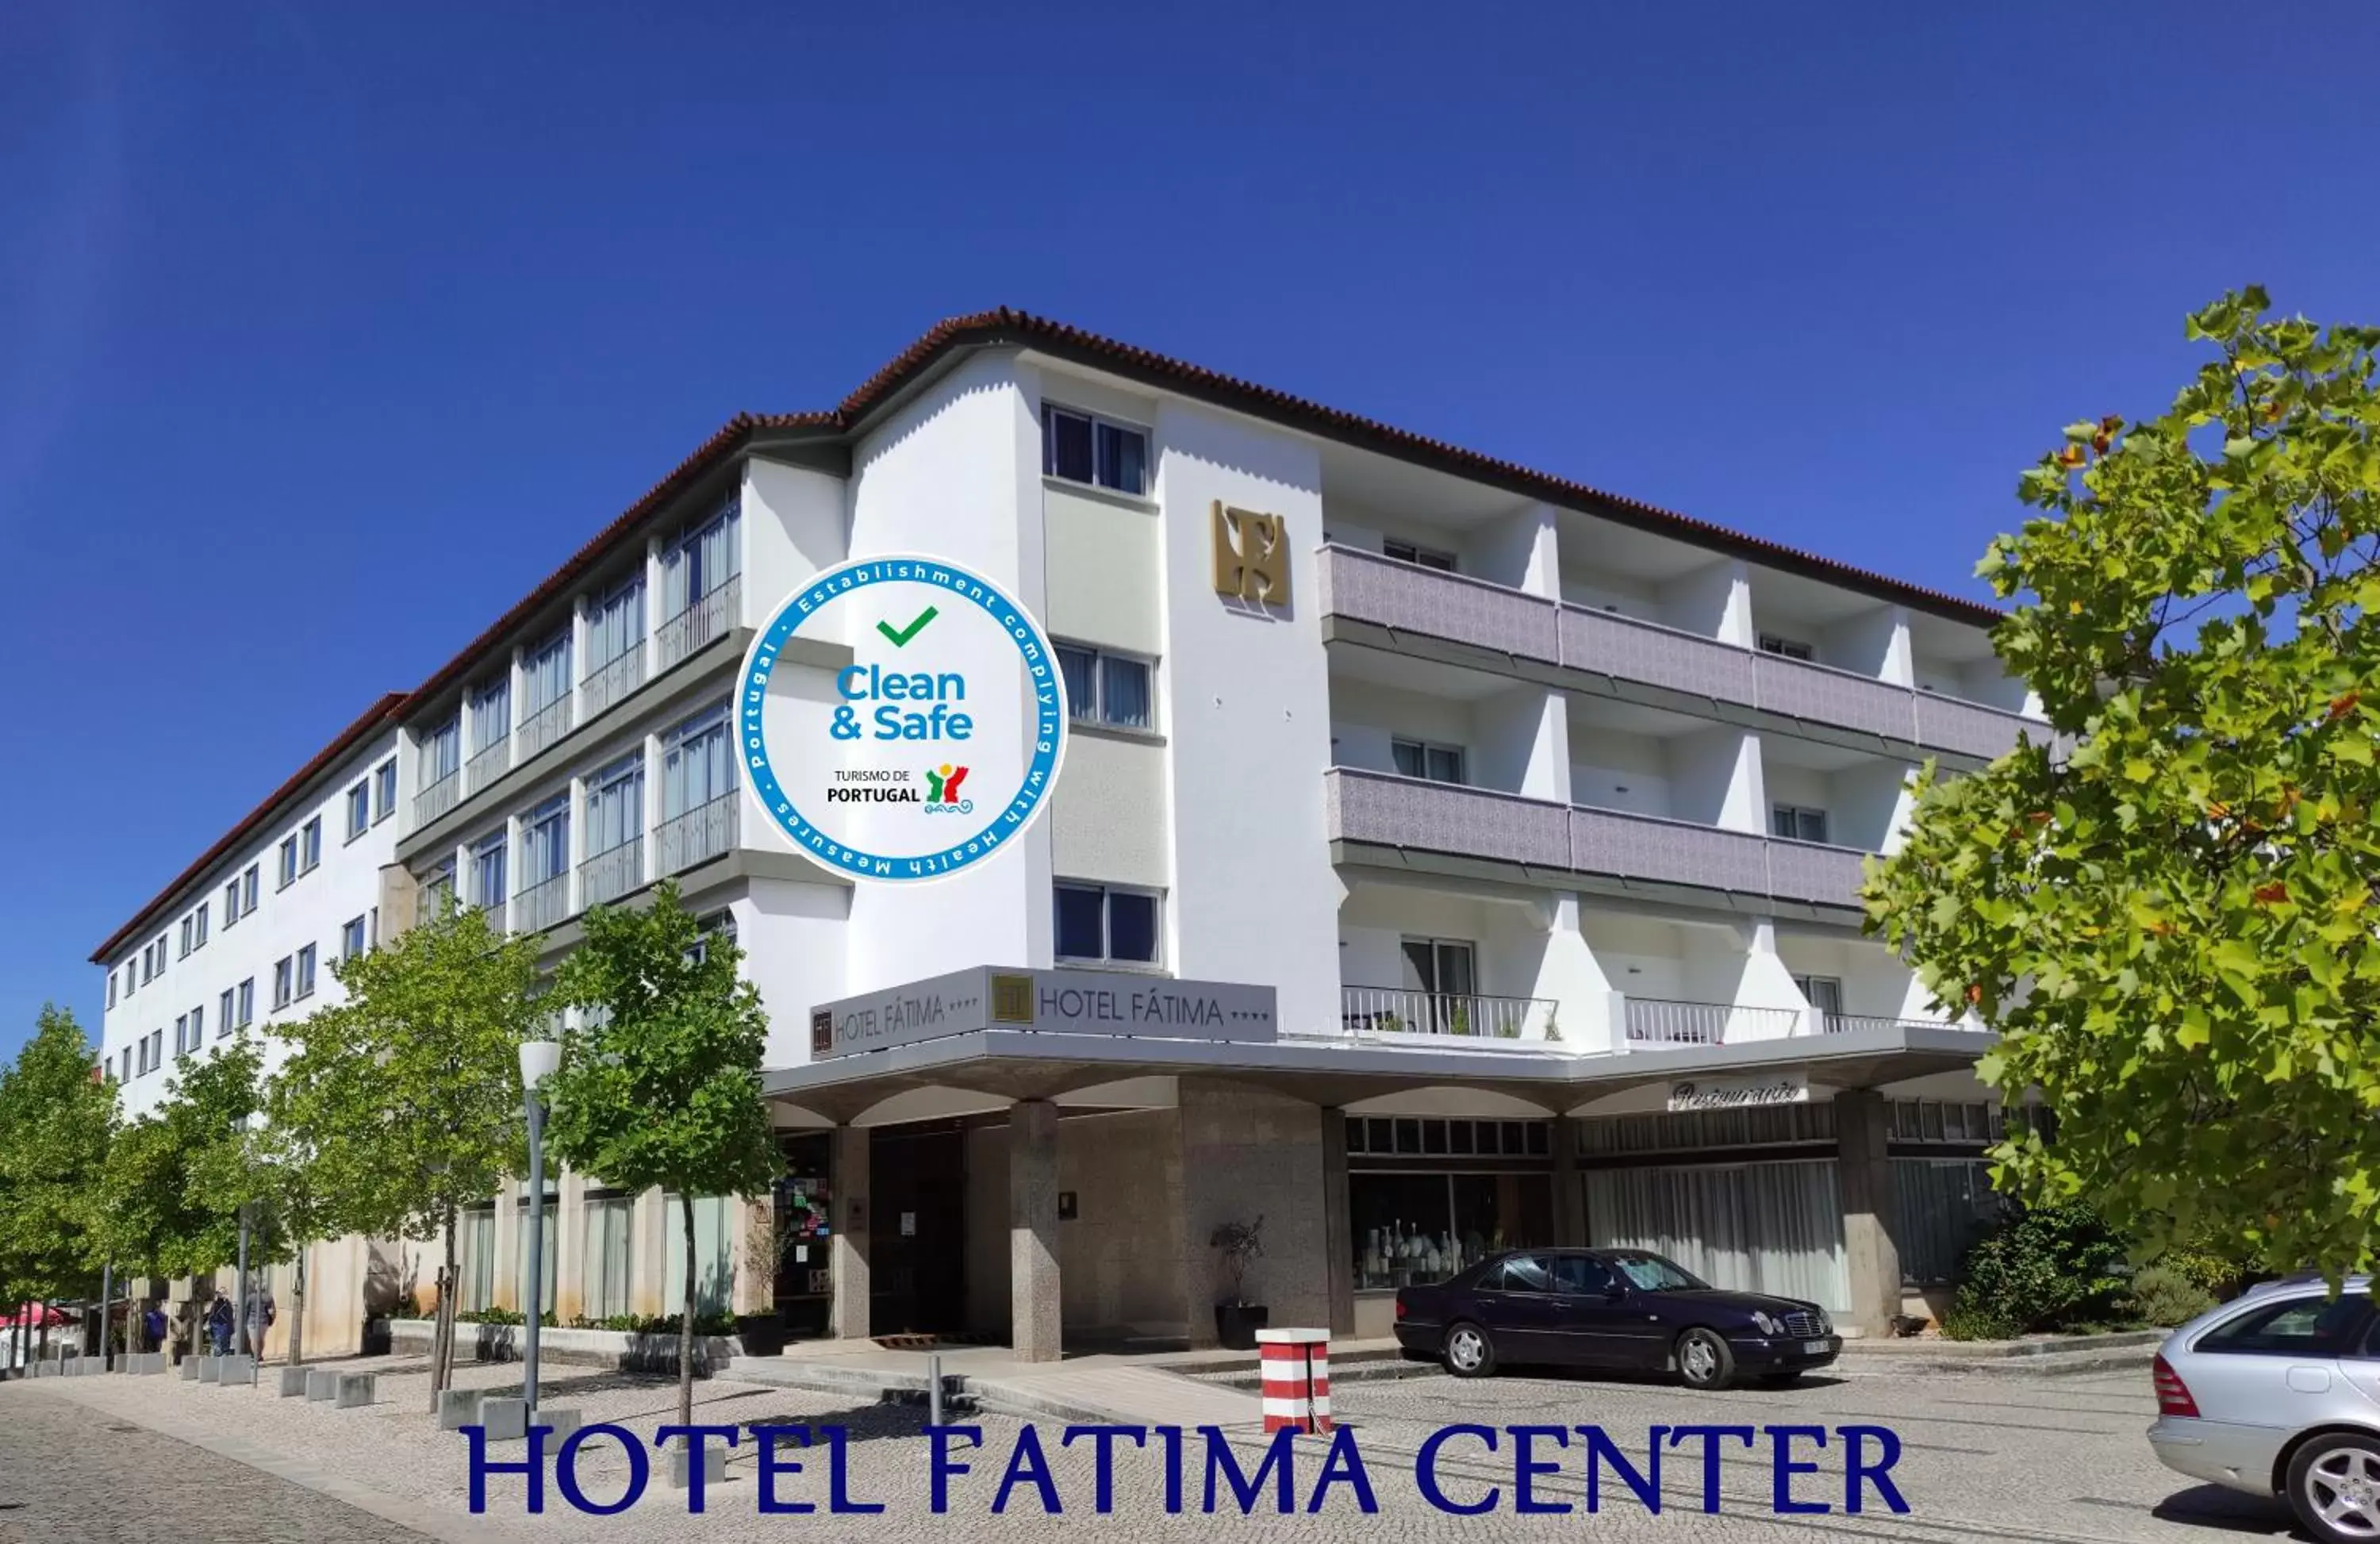 Facade/entrance, Property Building in Hotel Fatima